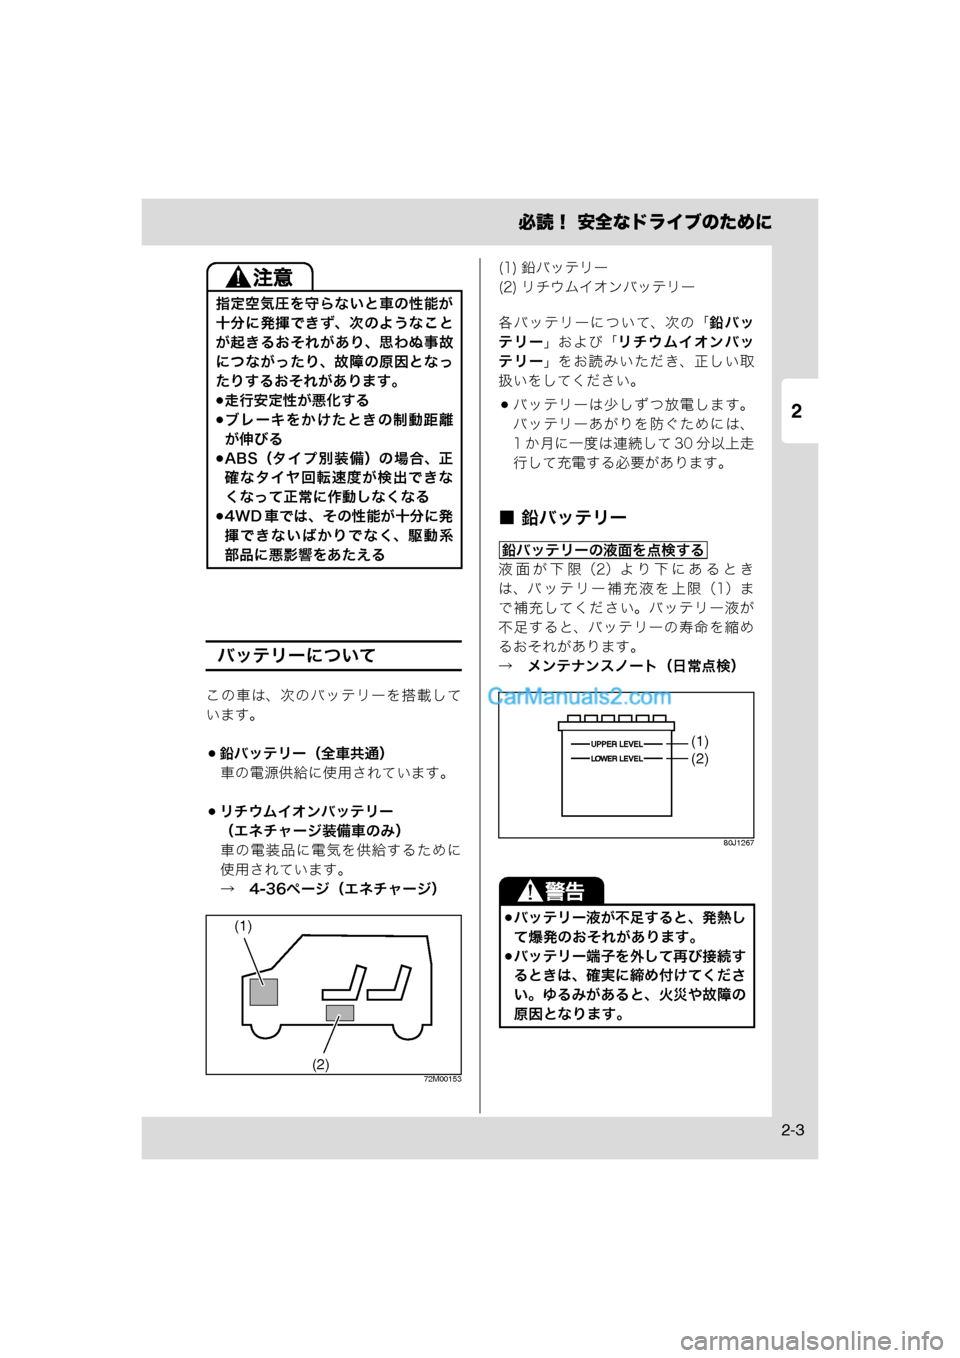 MAZDA MODEL CARROL 2013  取扱説明書 (キャロル) (in Japanese) 2
必読！ 安全なドライブのために
2-3
バッテリーについて
この車は、次のバッテリーを搭載して
います。
鉛バッテリー（全車共通）車の電源供給